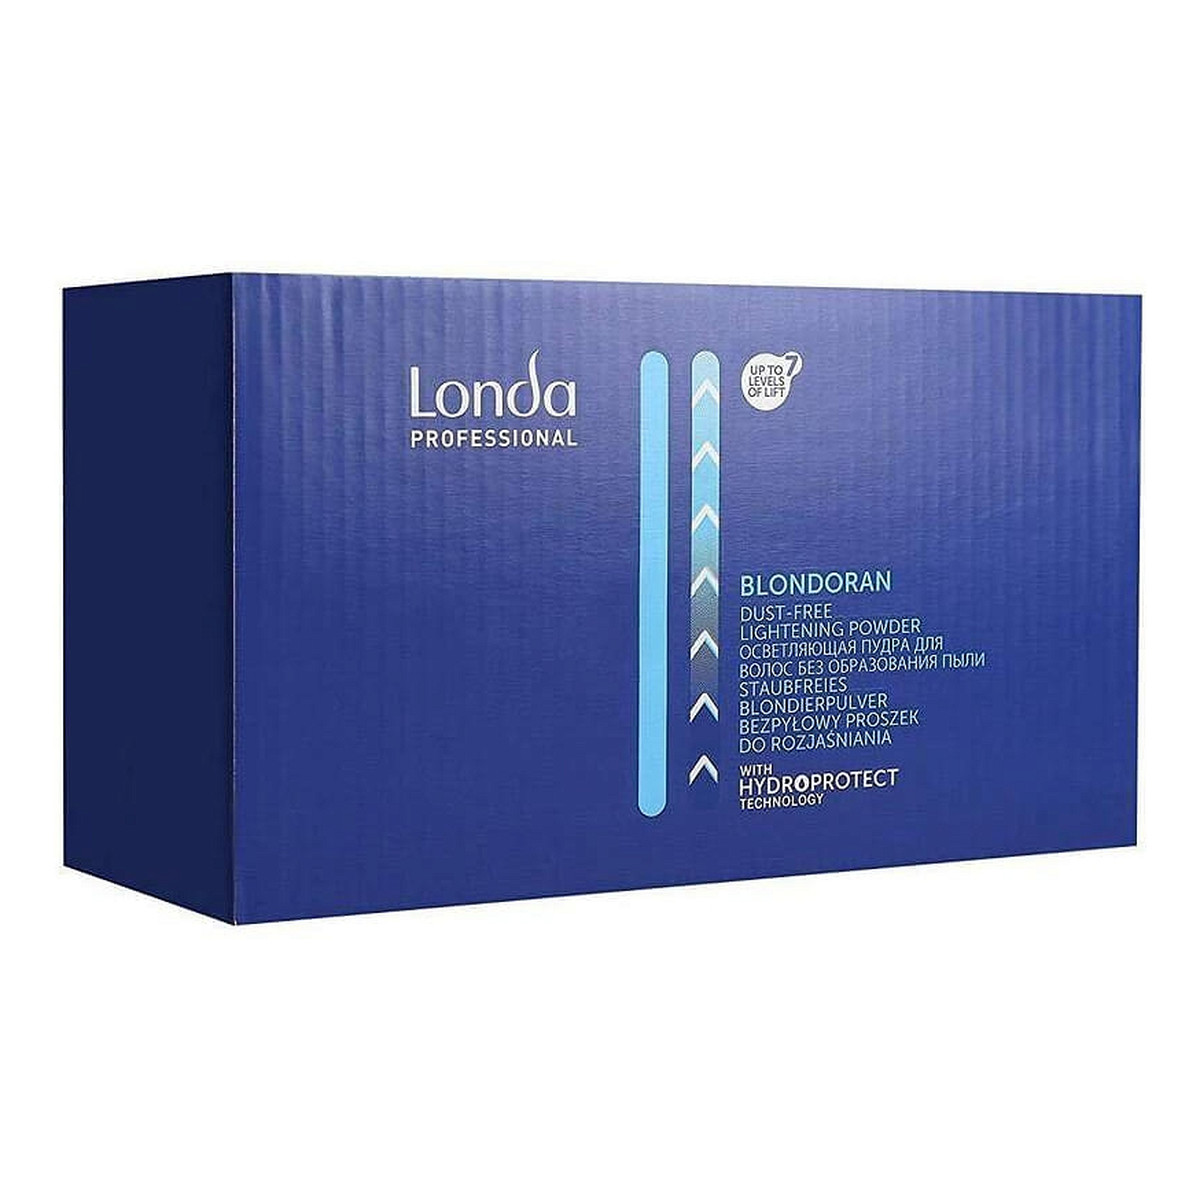 Londa Professional Professional Blondoran Dust-Free Lightening Powder bezpyłowy rozjaąniacz do włosów 1000g